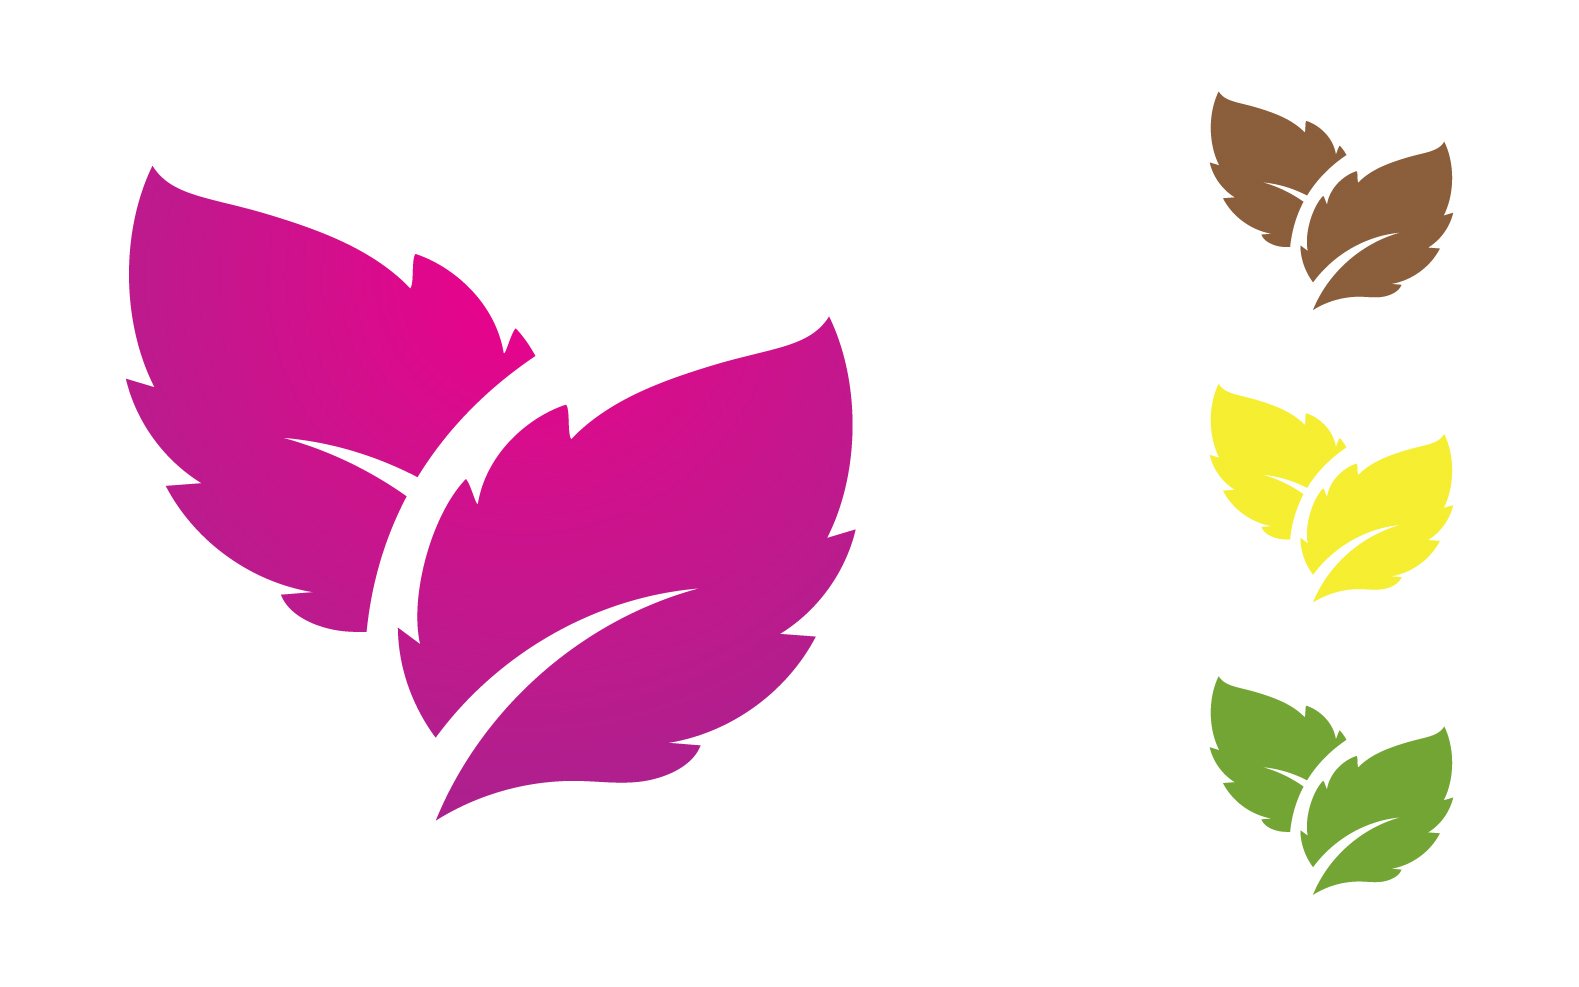 Flower leaf circle decoration or logo nature v2